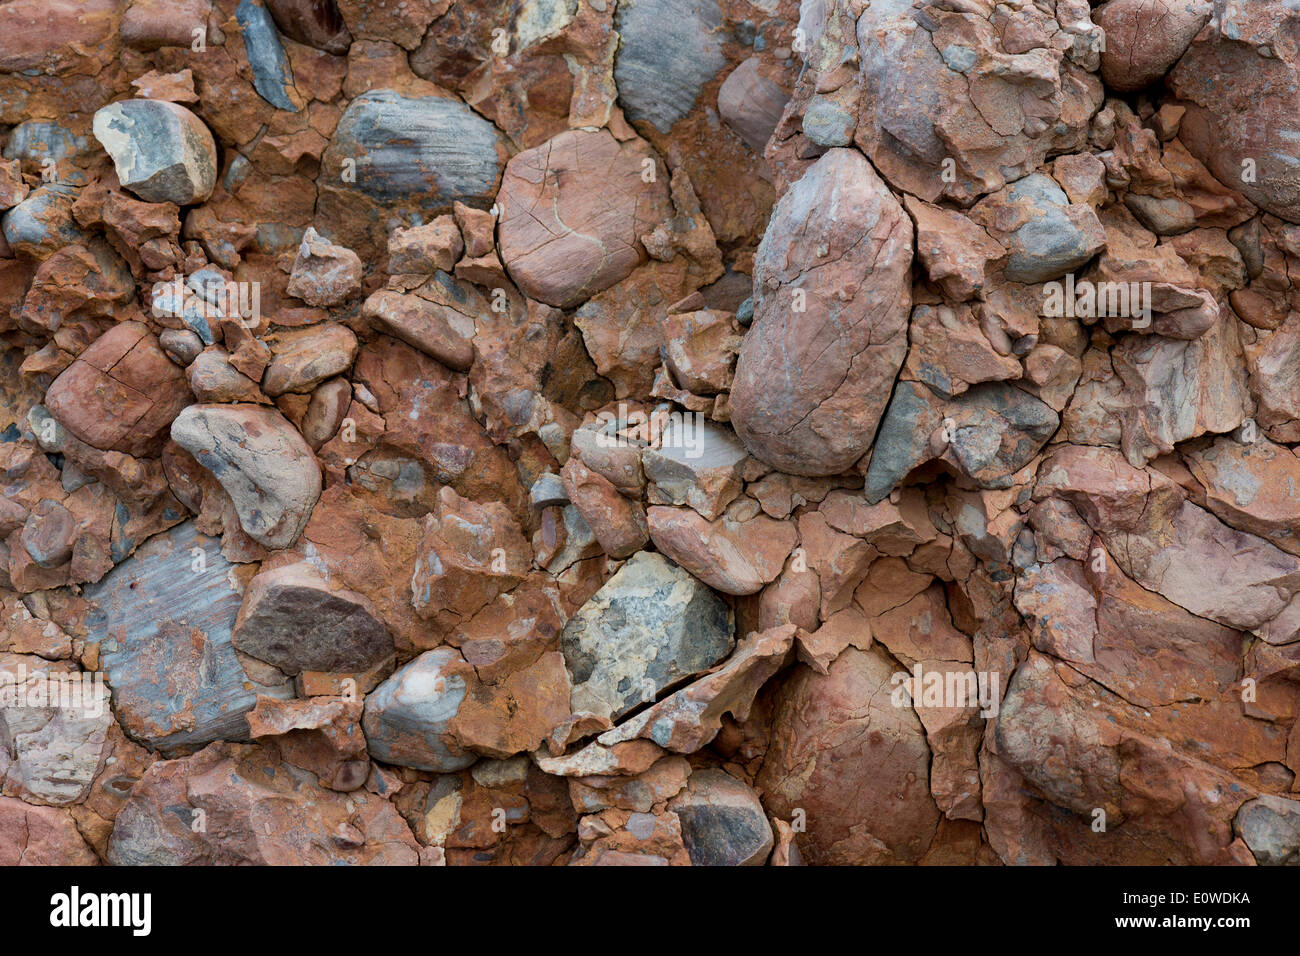 Los sedimentos que contienen óxido de hierro, conglomerados de los escombros de la Caledonian cordillera, conocida como viejo rojo Foto de stock